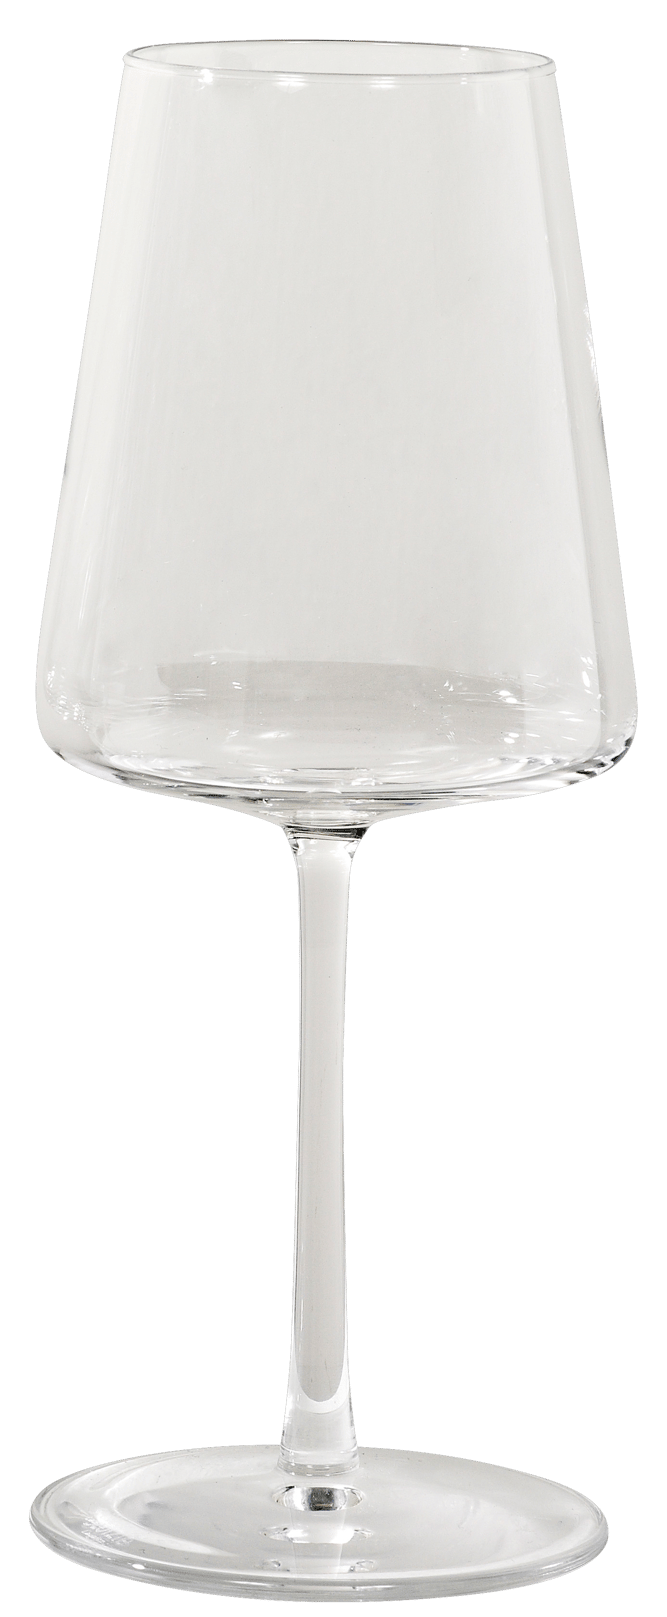 POWER Verre à vin transparent H 22,6 cm - Ø 9,3 cm